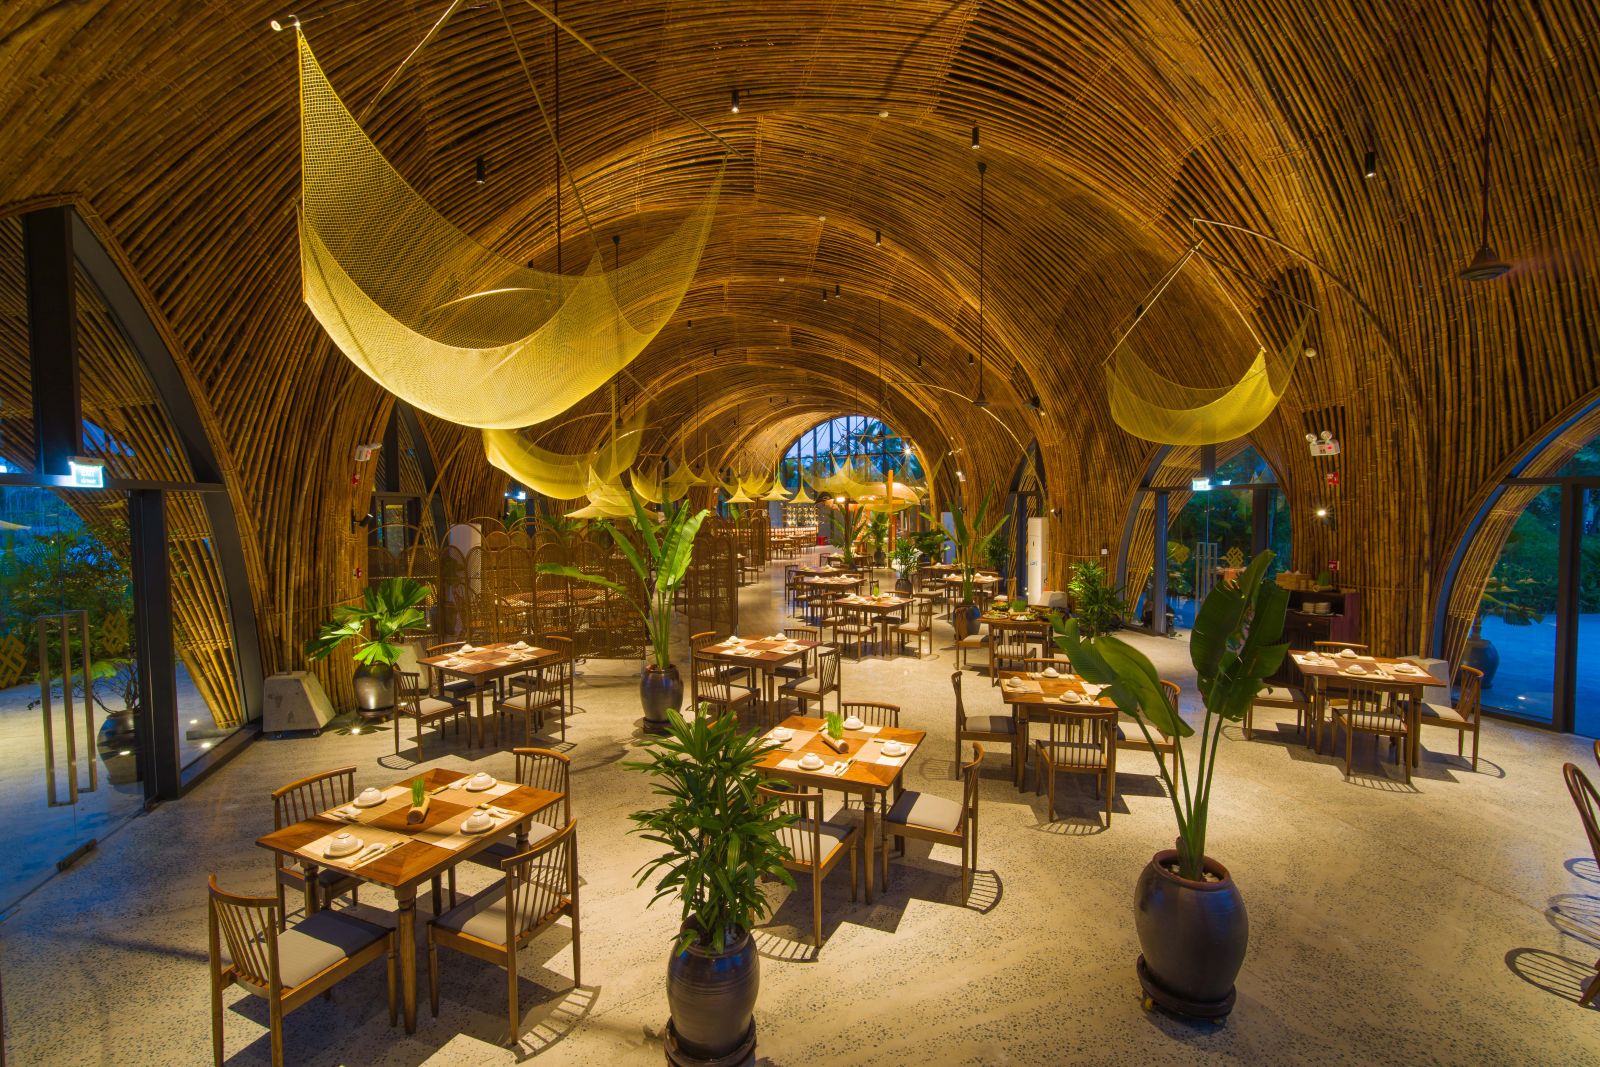 Không gian bên trong của nhà hàng Bếp Tre được thiết kế với cảm hứng từ các làng nghề truyền thống Hội An